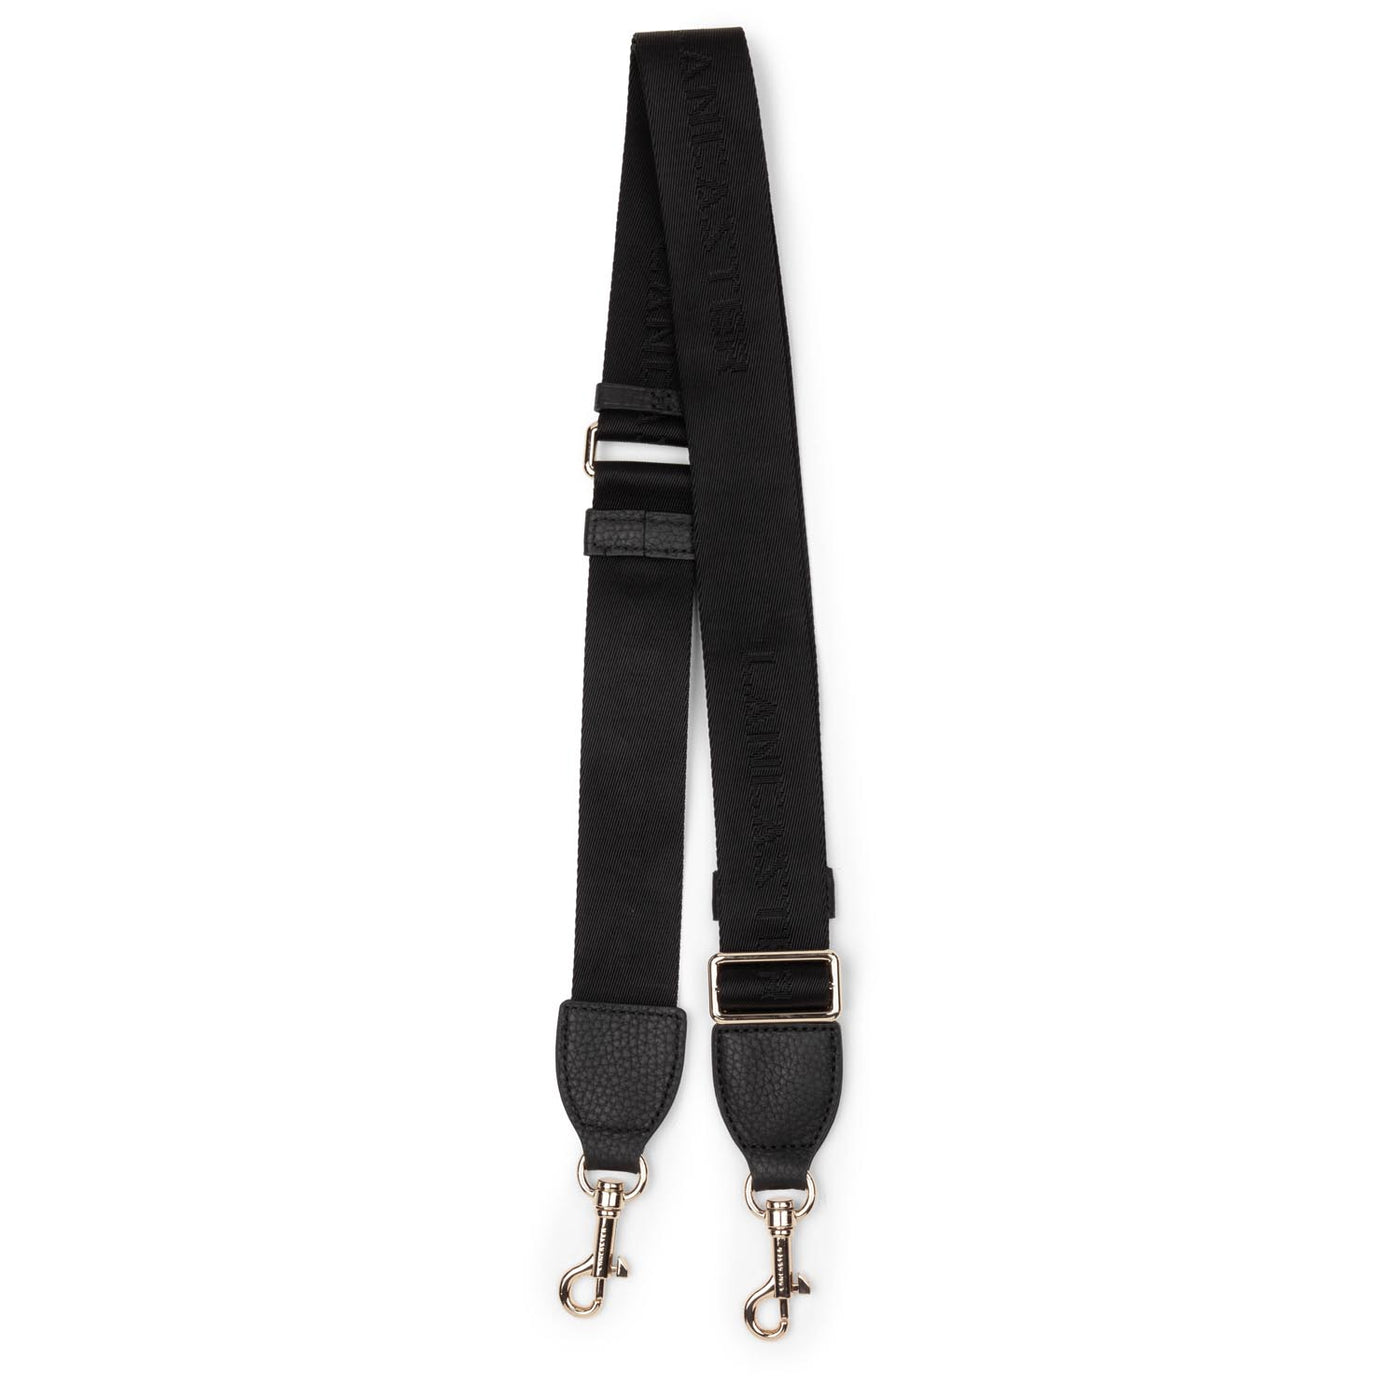 shoulder strap - accessoires textile #couleur_noir